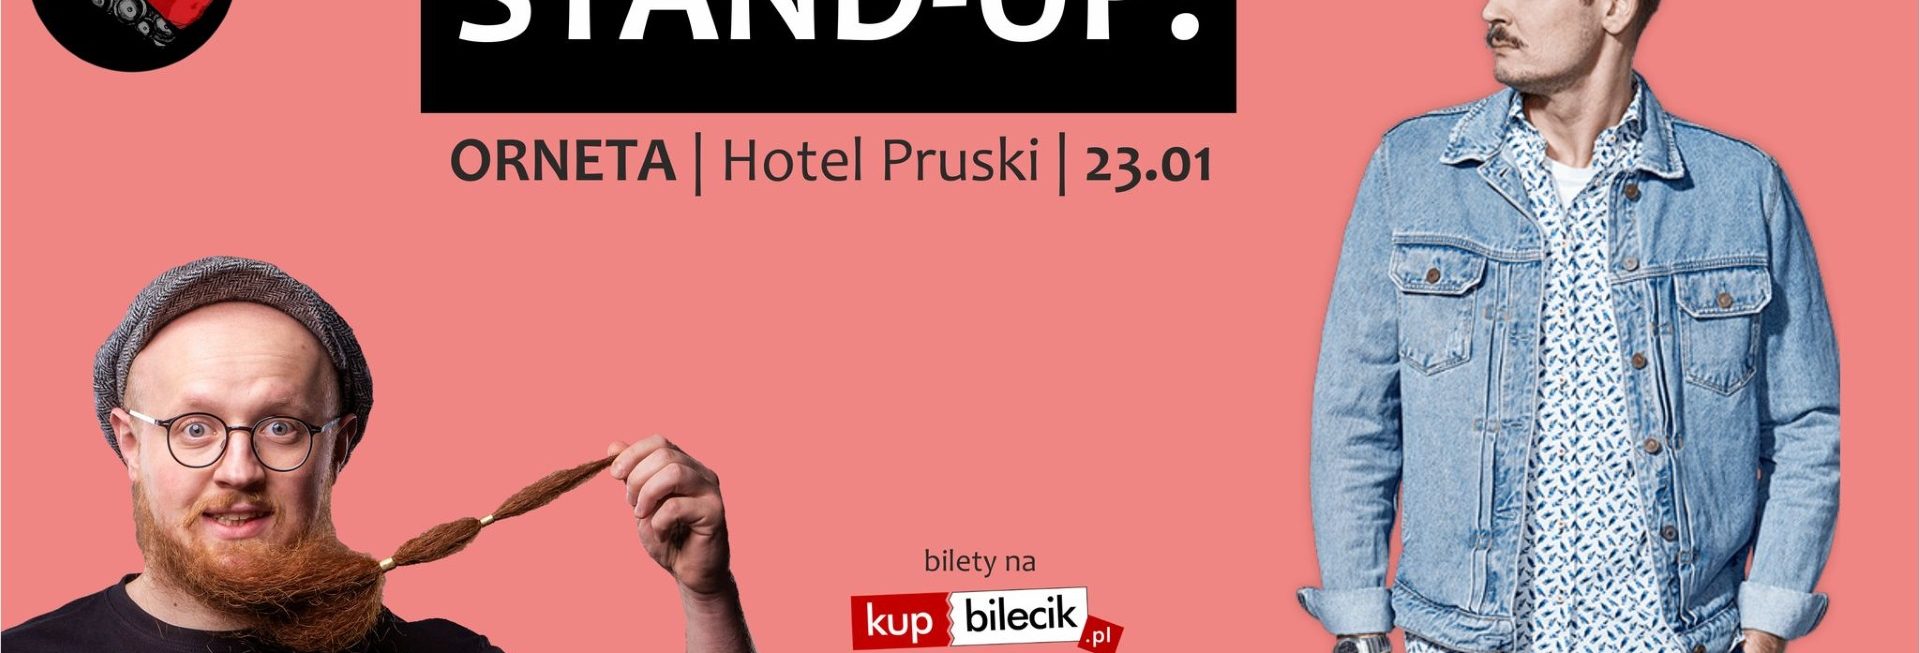 Plakat graficzny zapraszający do Ornety na Stand-up MACIEK ADAMCZYK & ARKADIUSZ JAKSA JAKSZEWICZ - Orneta 2022.